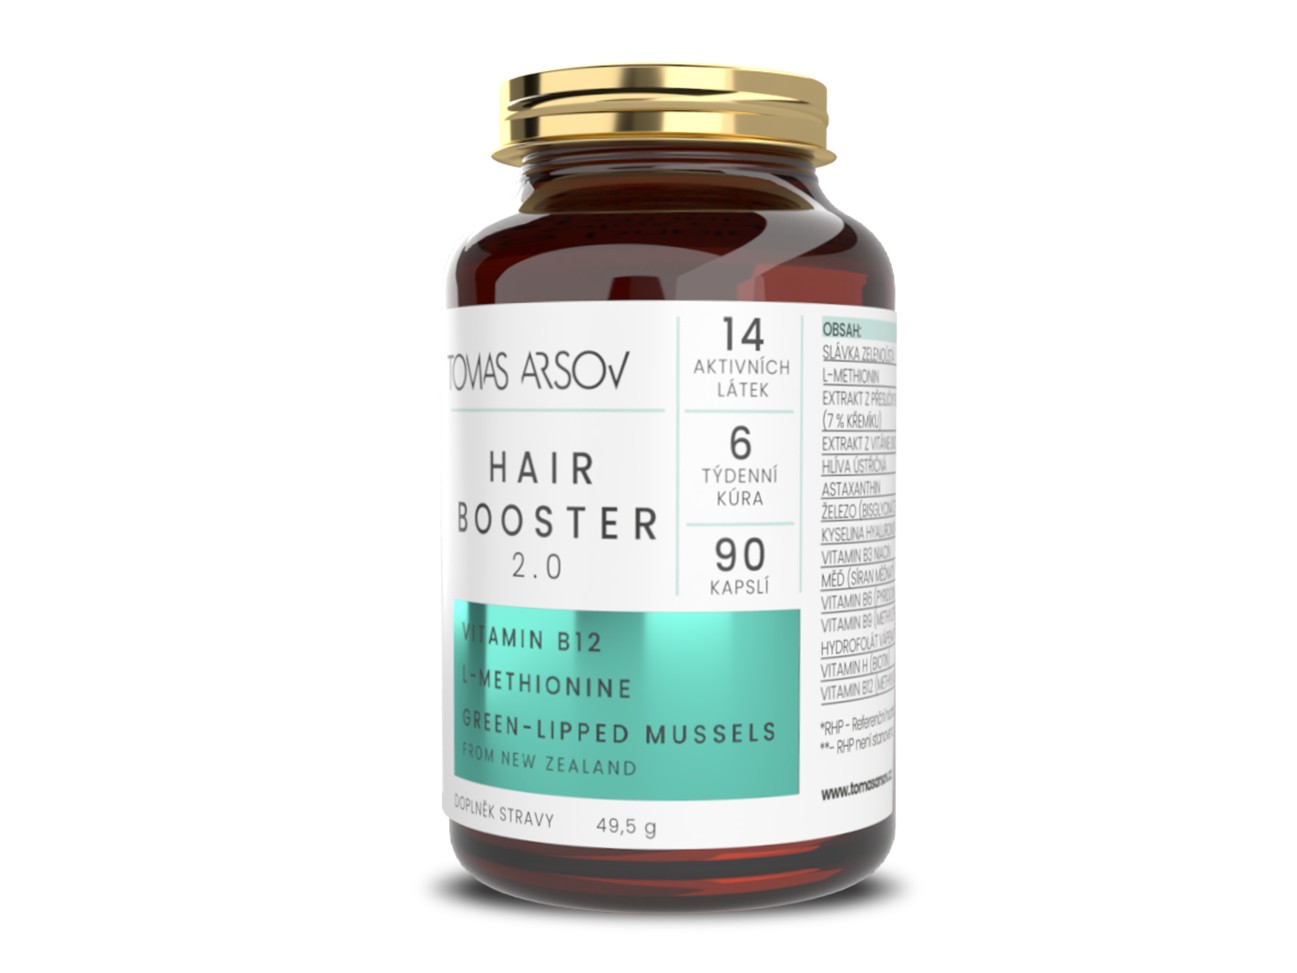 Tomas Arsov Hairbooster 2.0 pro podporu růstu vlasů 90 kapslí